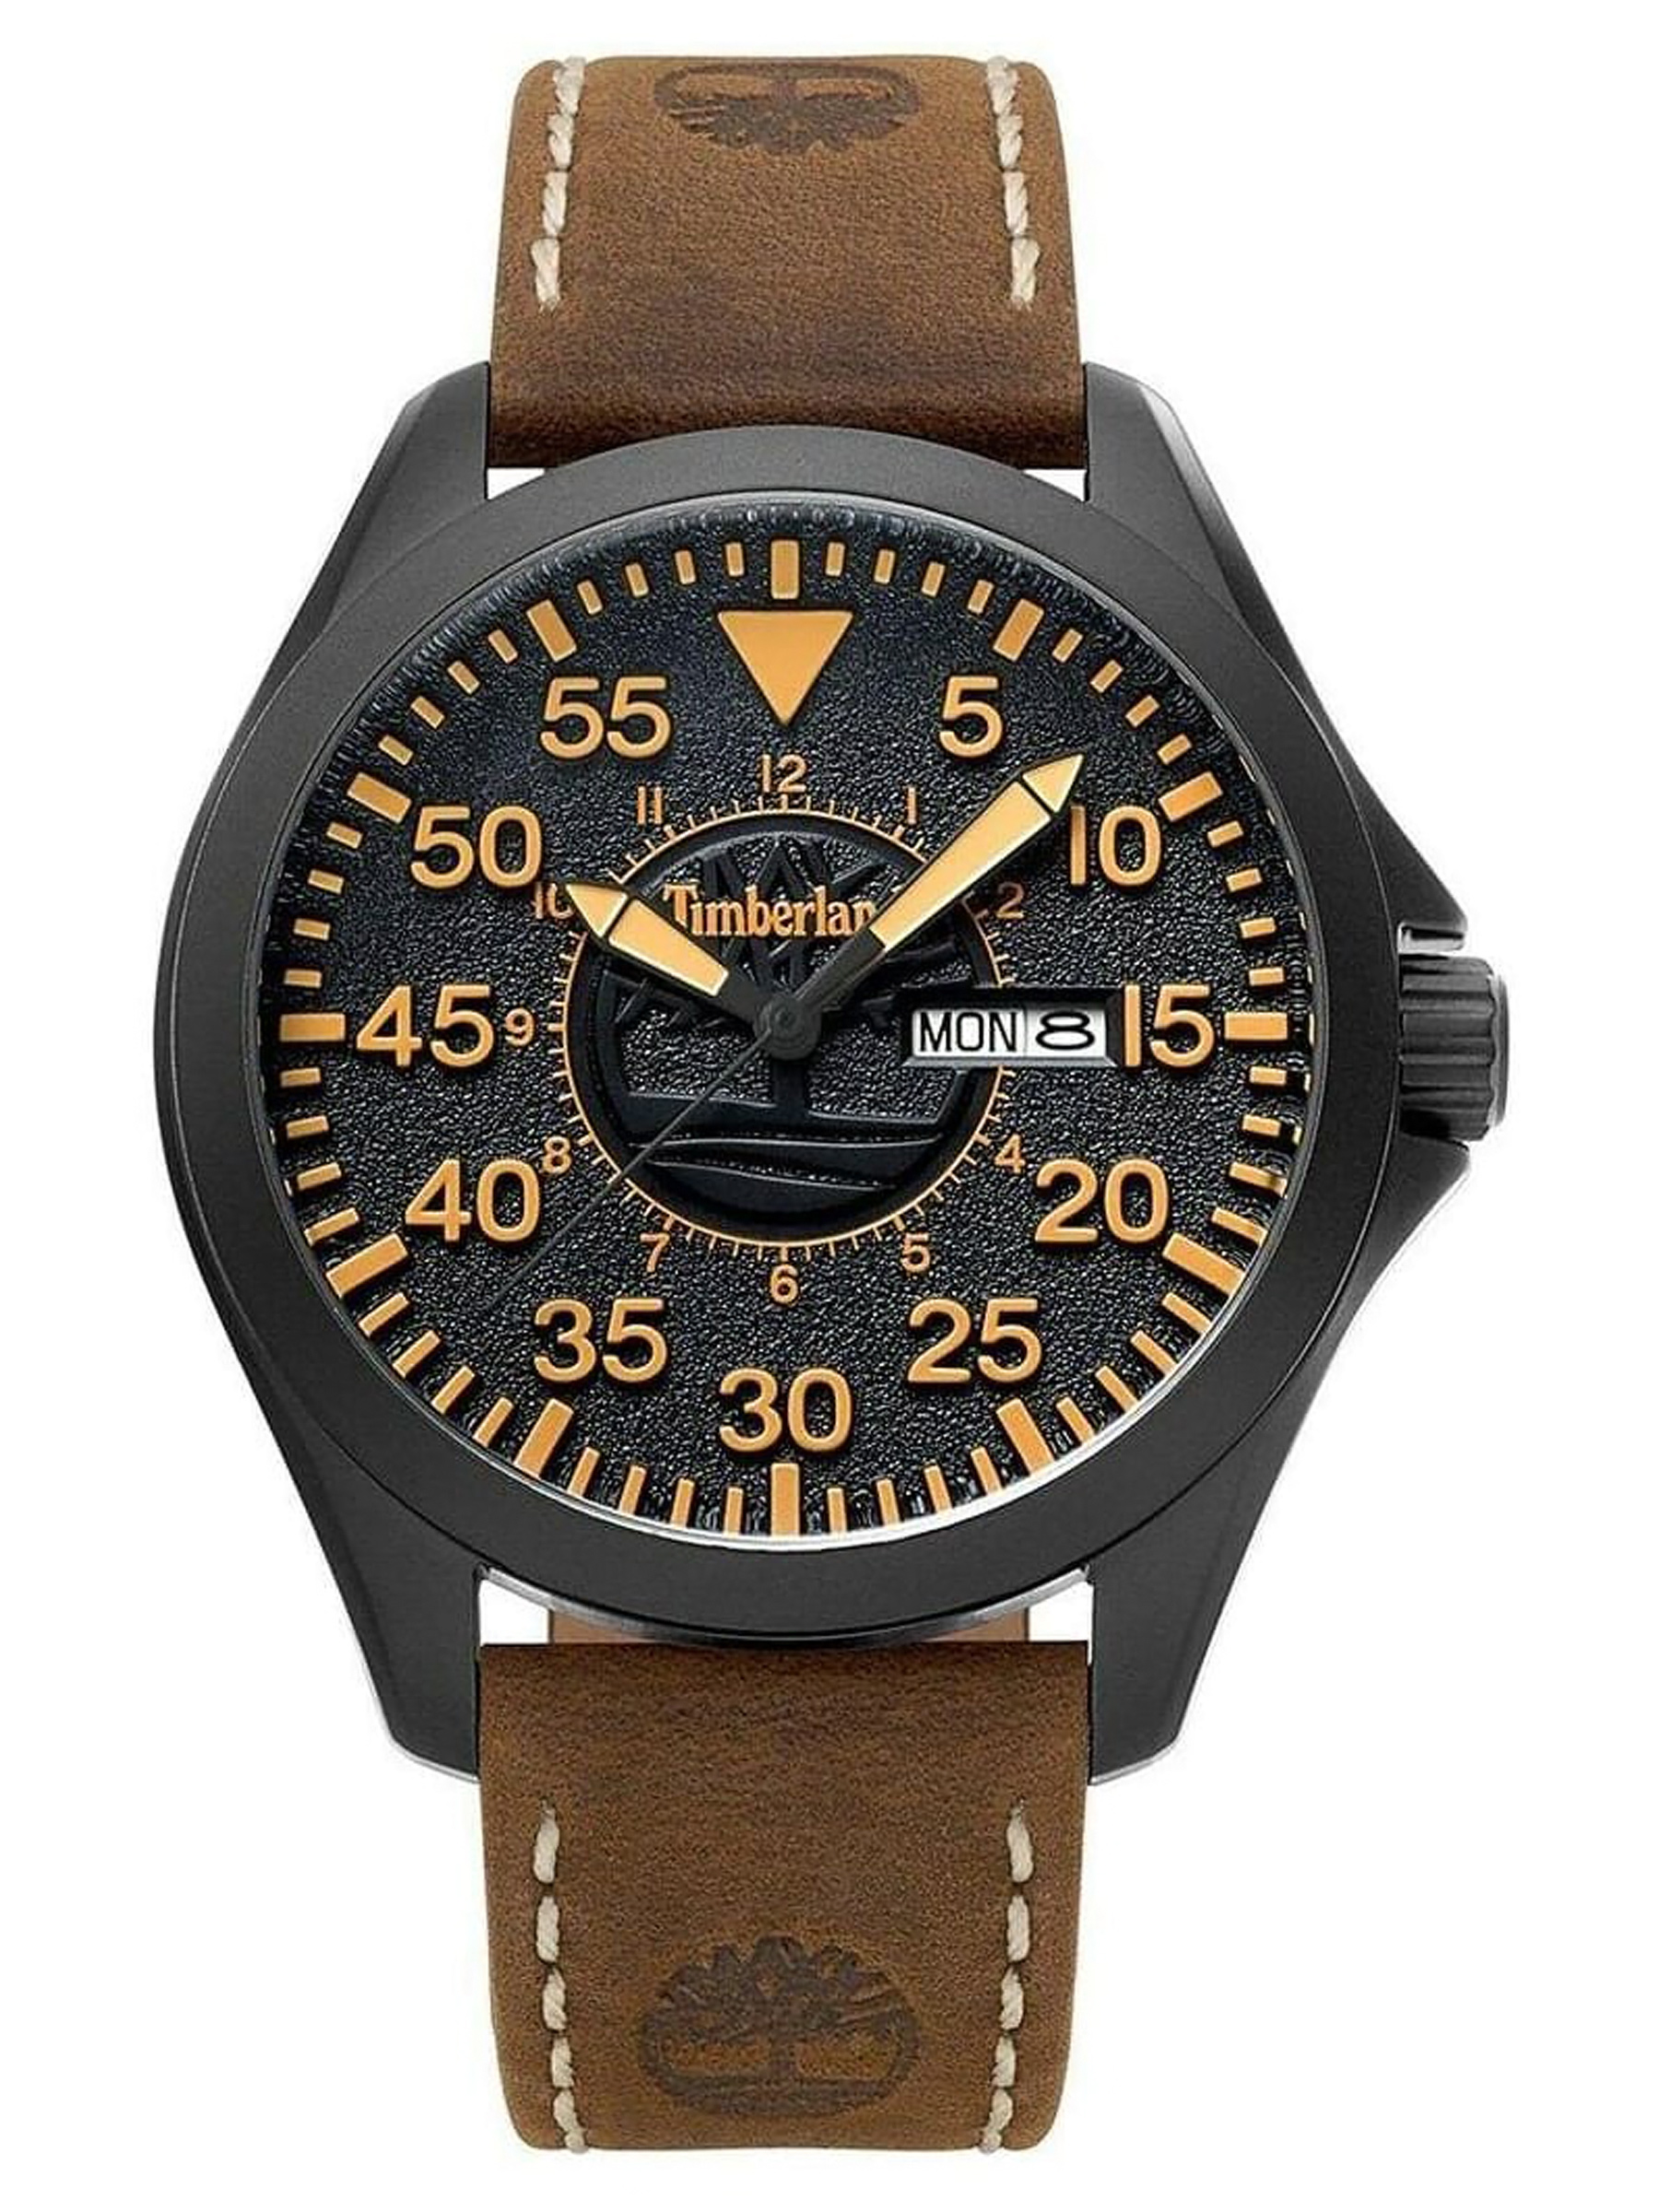 E-shop Pánske hodinky Timberland TBL.15594JSB/02 (zq002a)